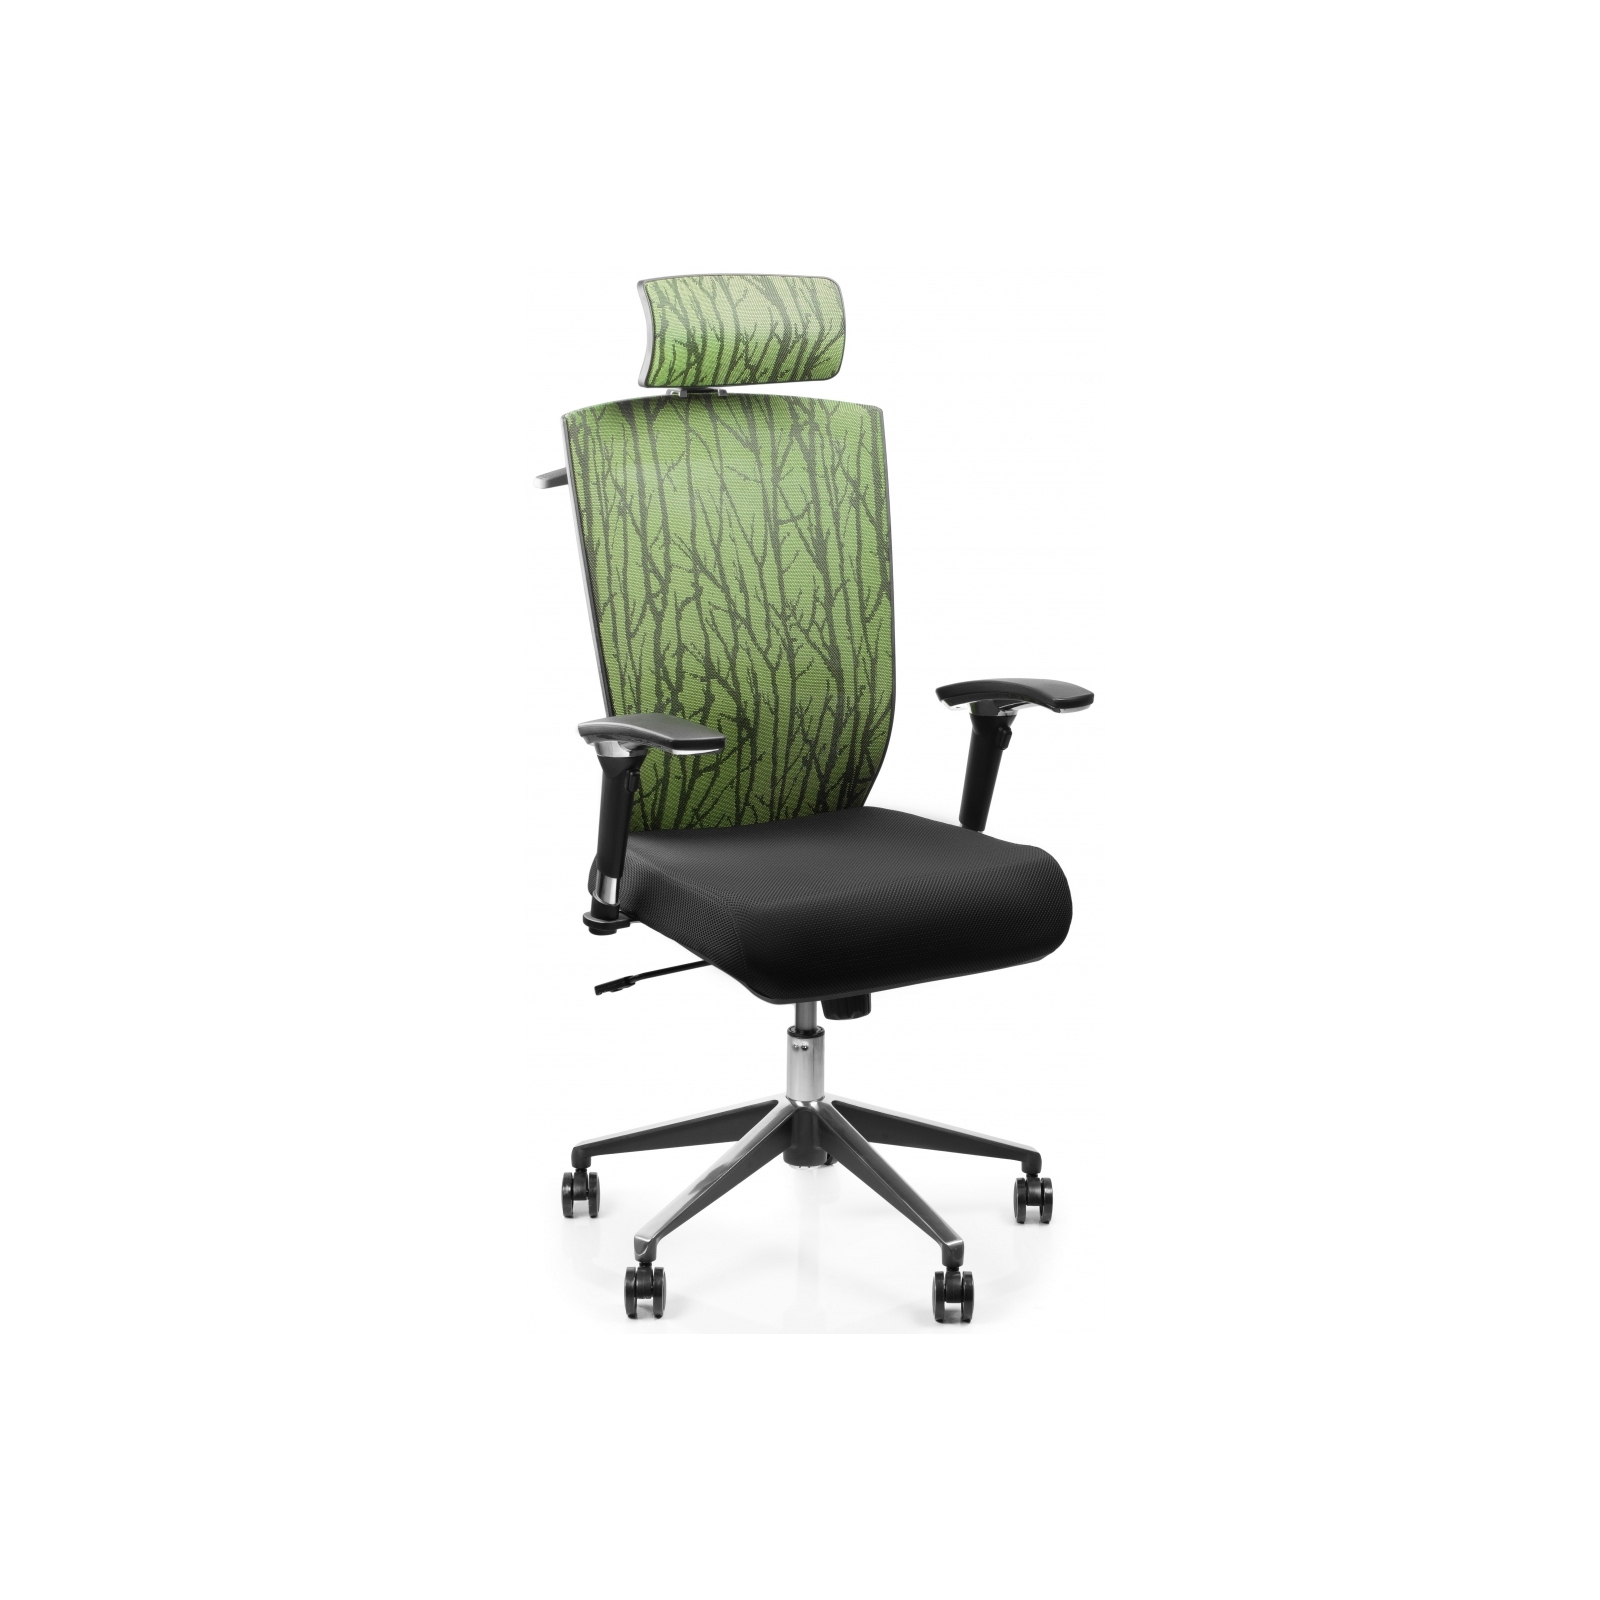 Офисное кресло Barsky Eco (G-1) изображение 3